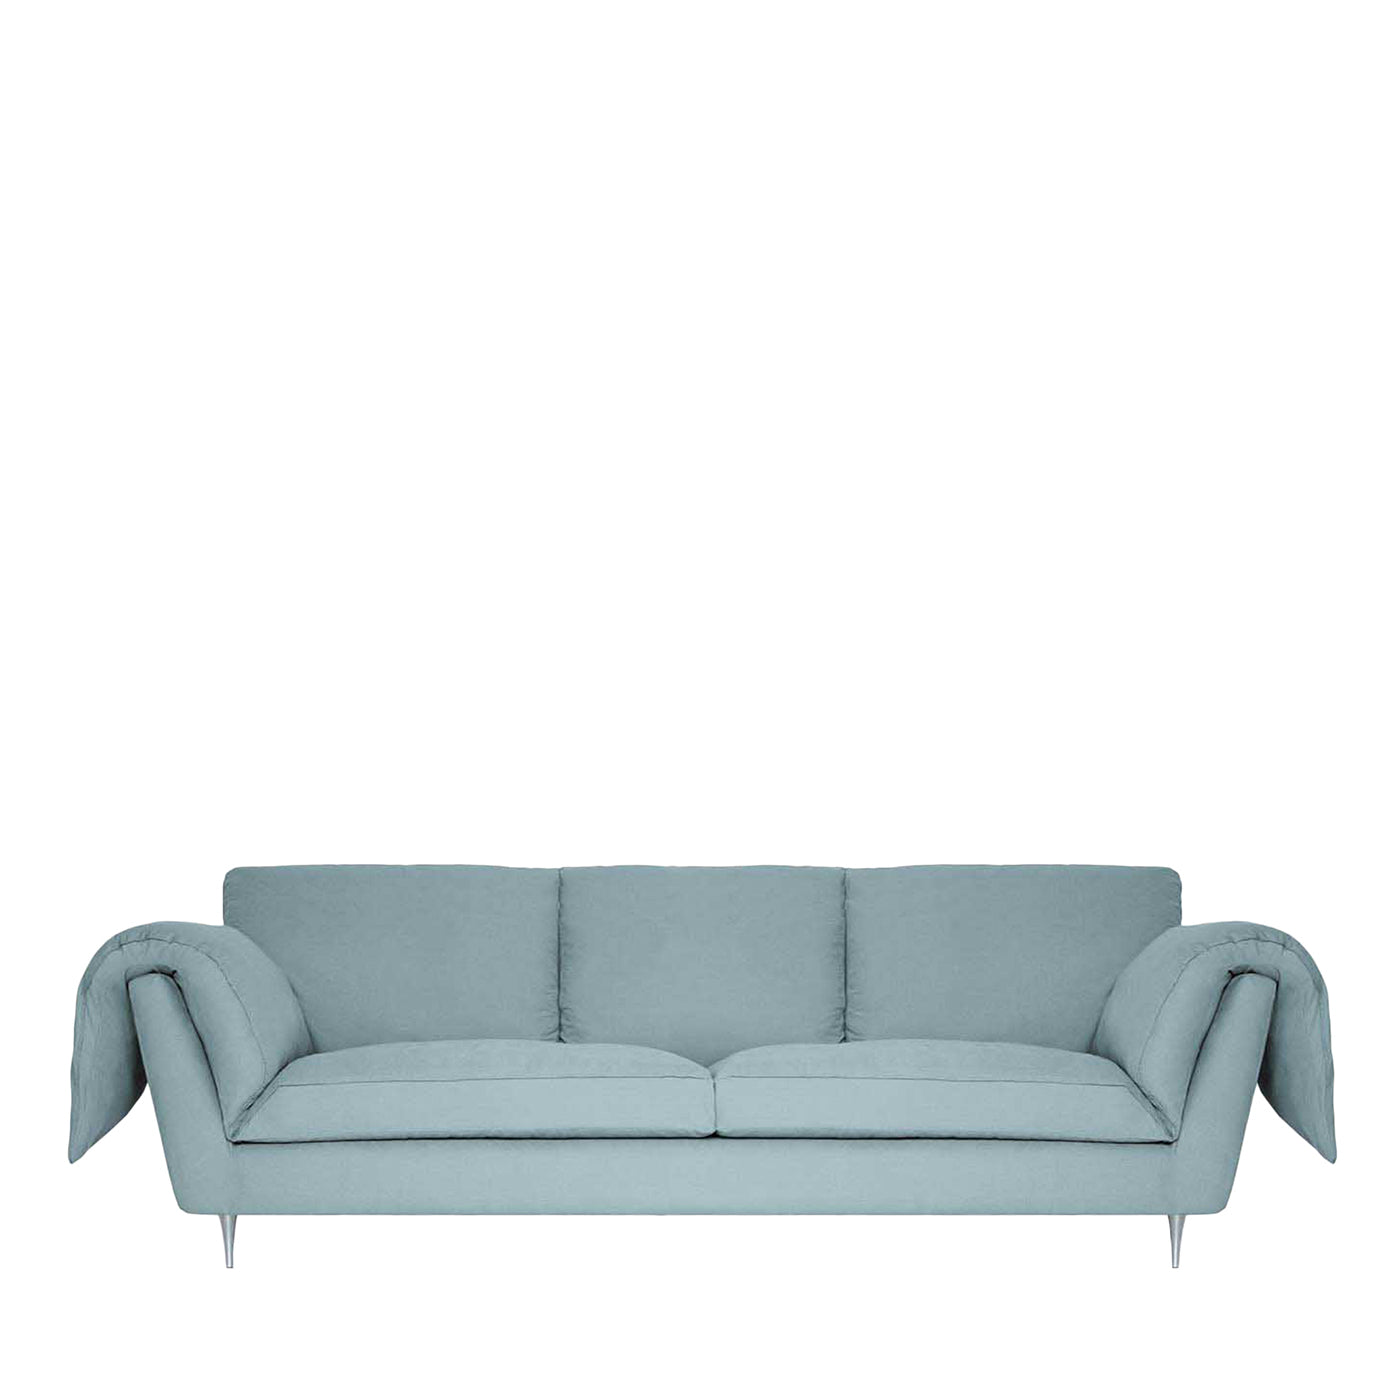 Casquet in Mandelgrün 3-Sitzer Bio Sofa - Hauptansicht